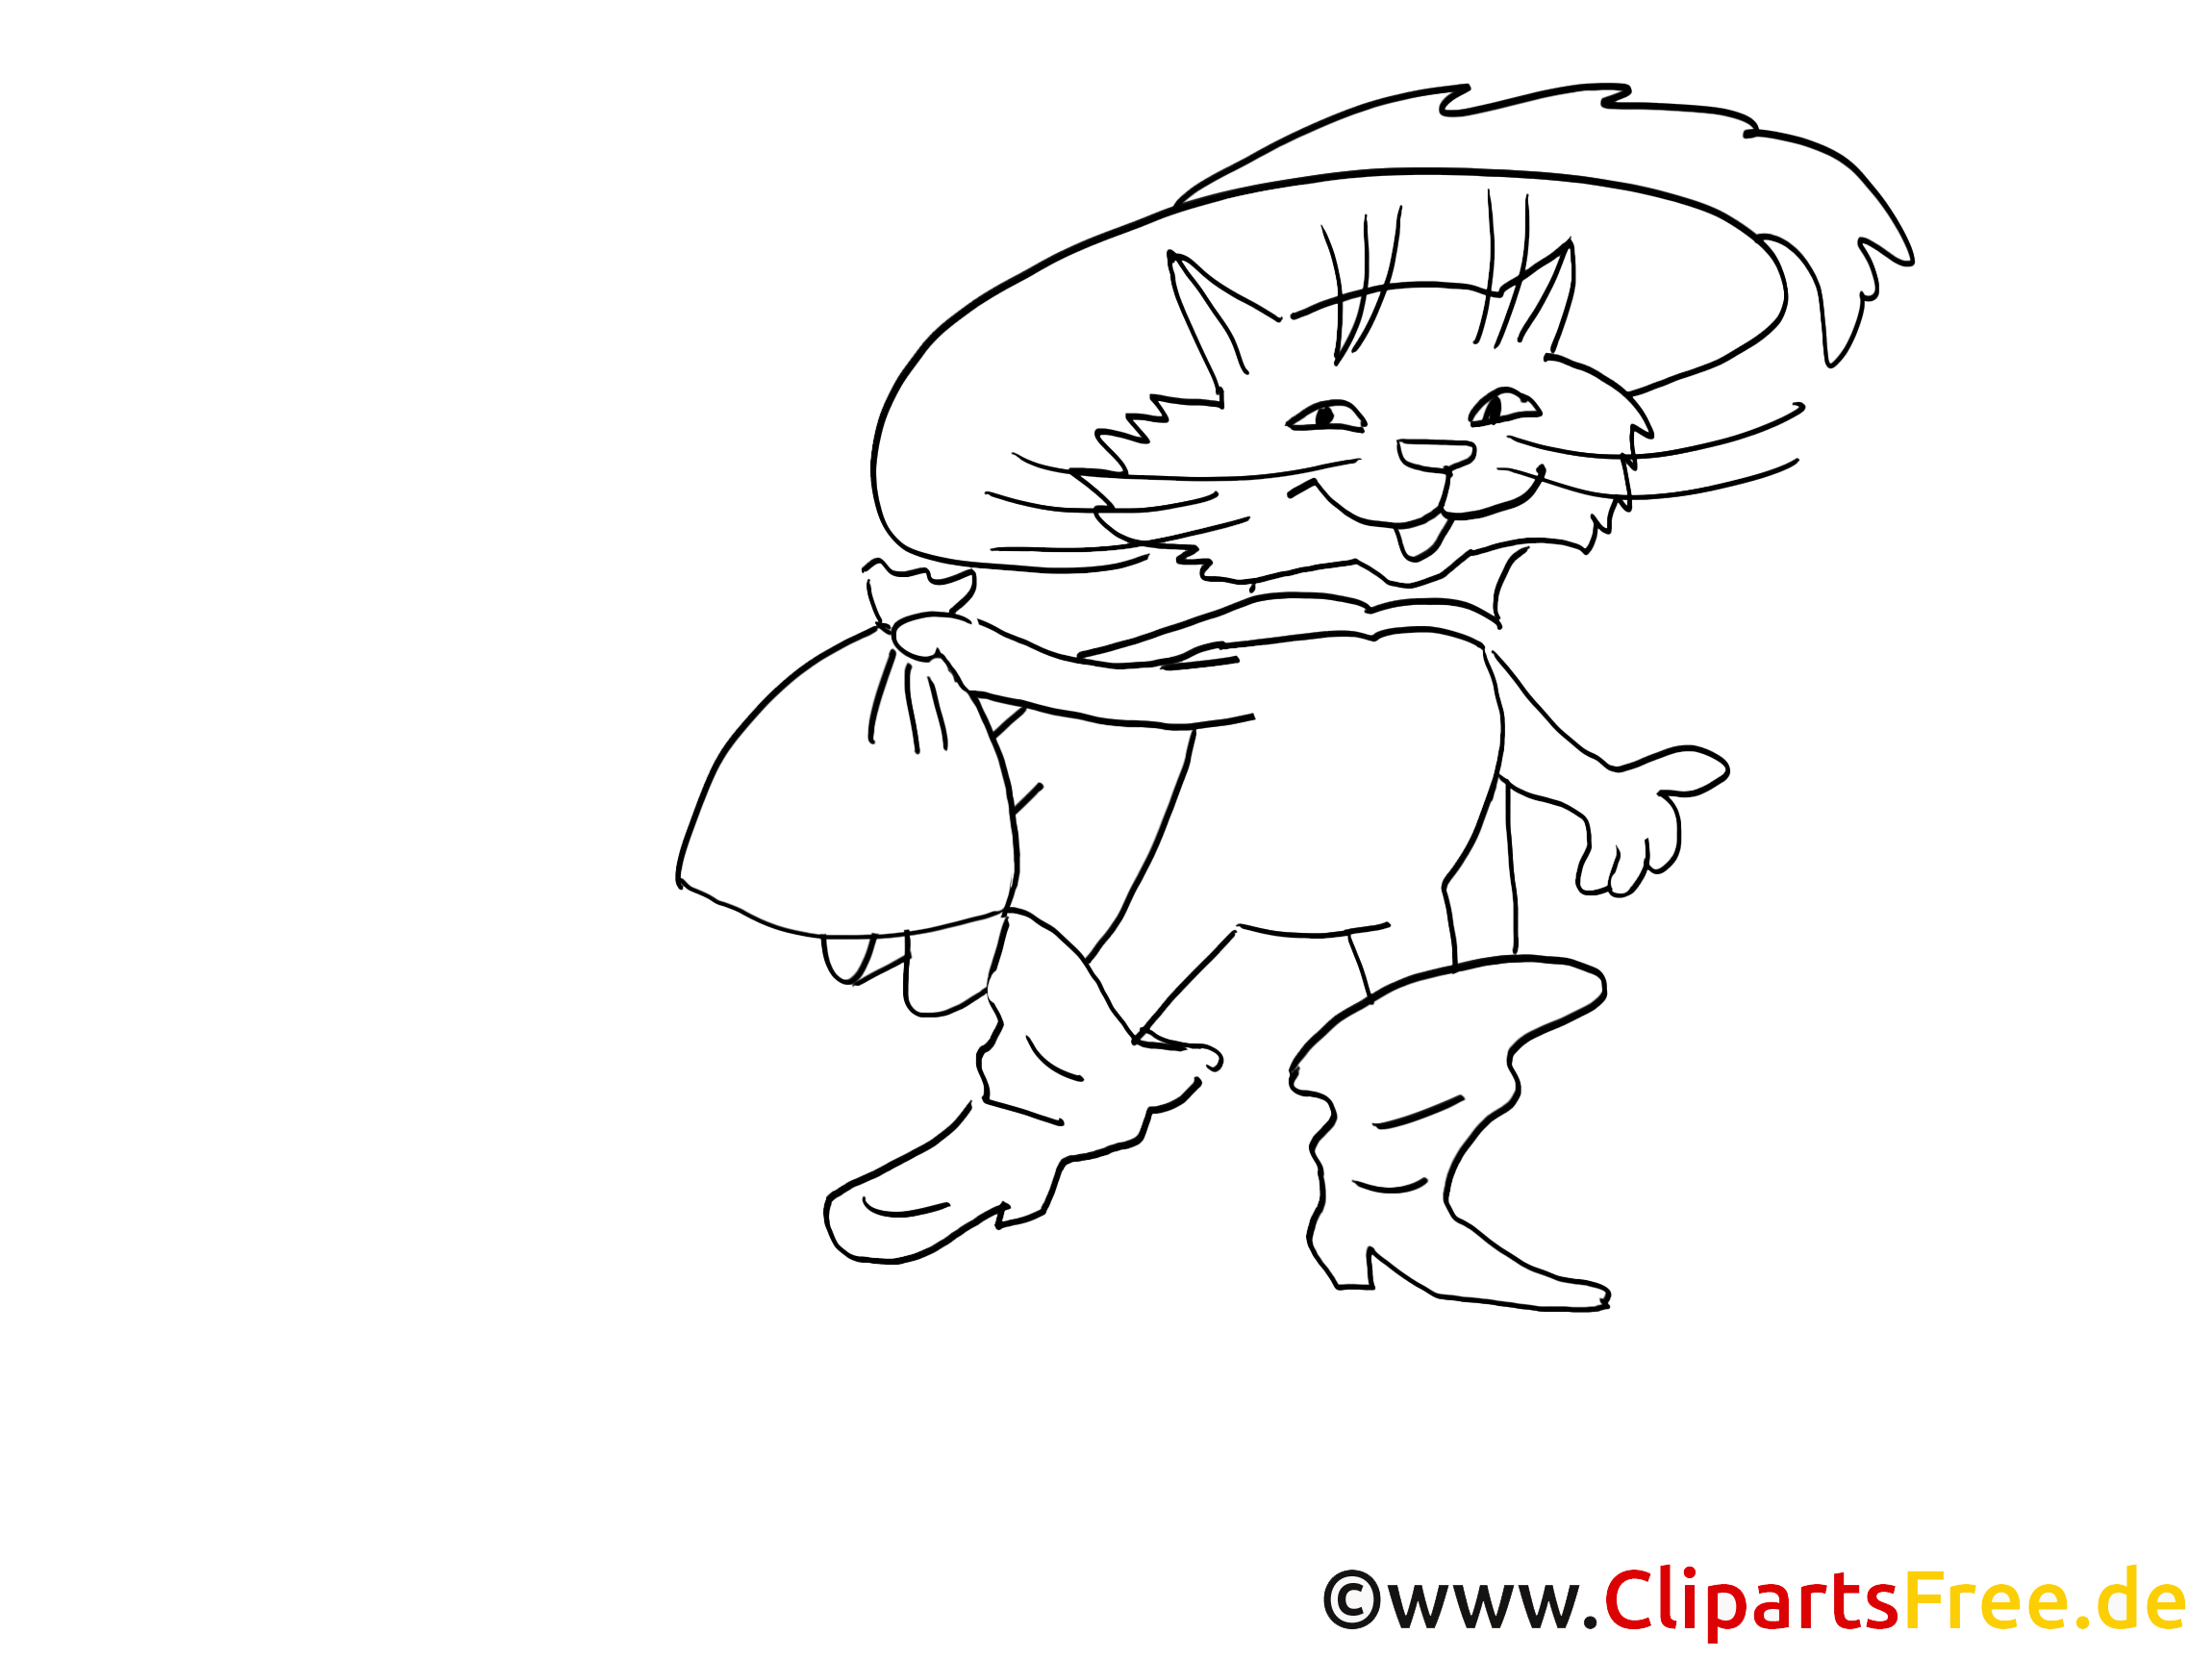 Рисунок кот в сапогах 2. Раскраска кота в сапогах из сказки Шарля Перро. Кот в сапогах рисунок для детей.